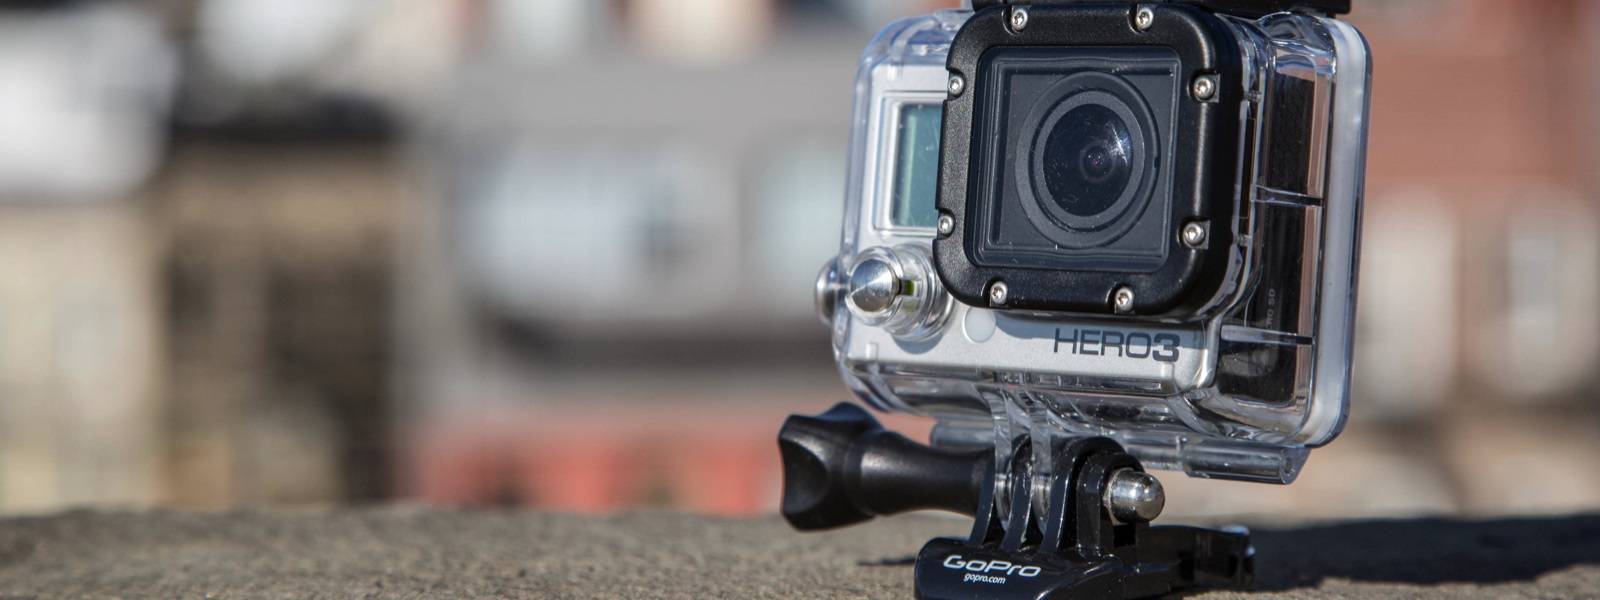 Обзор экшн камер gopro – модельный ряд, особенности, отзывы, цена